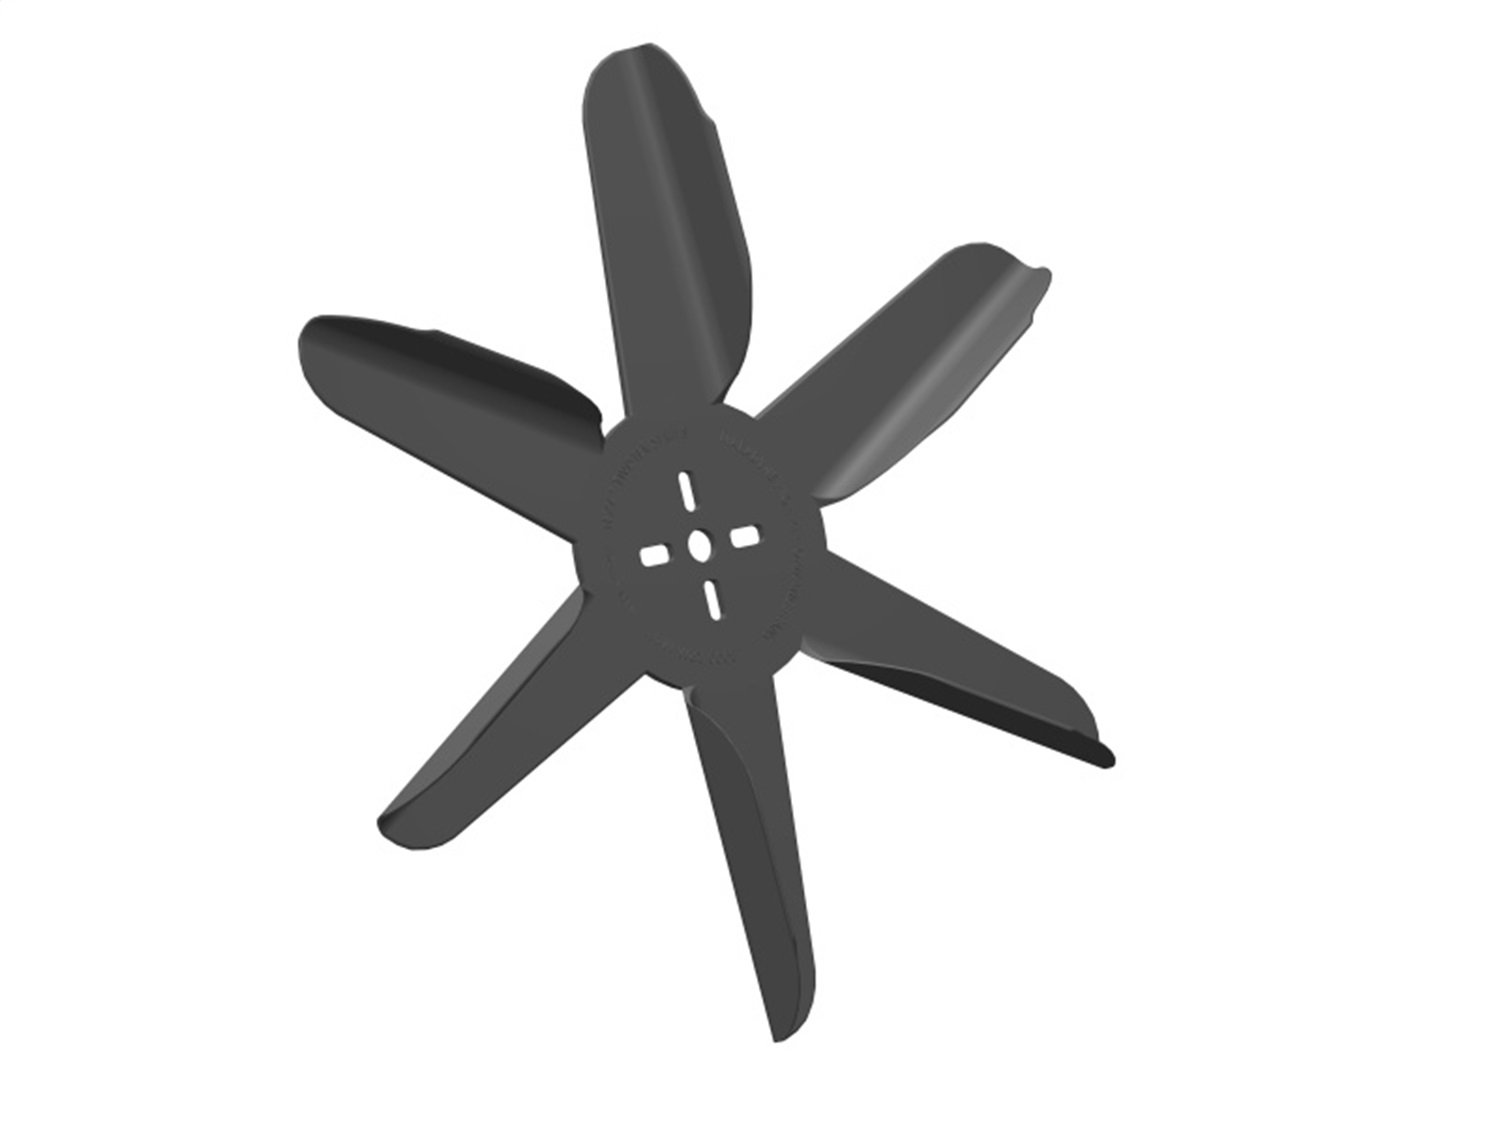 Texas Twister Engine-Driven Flex Fan Blade, Diameter: 16 in.